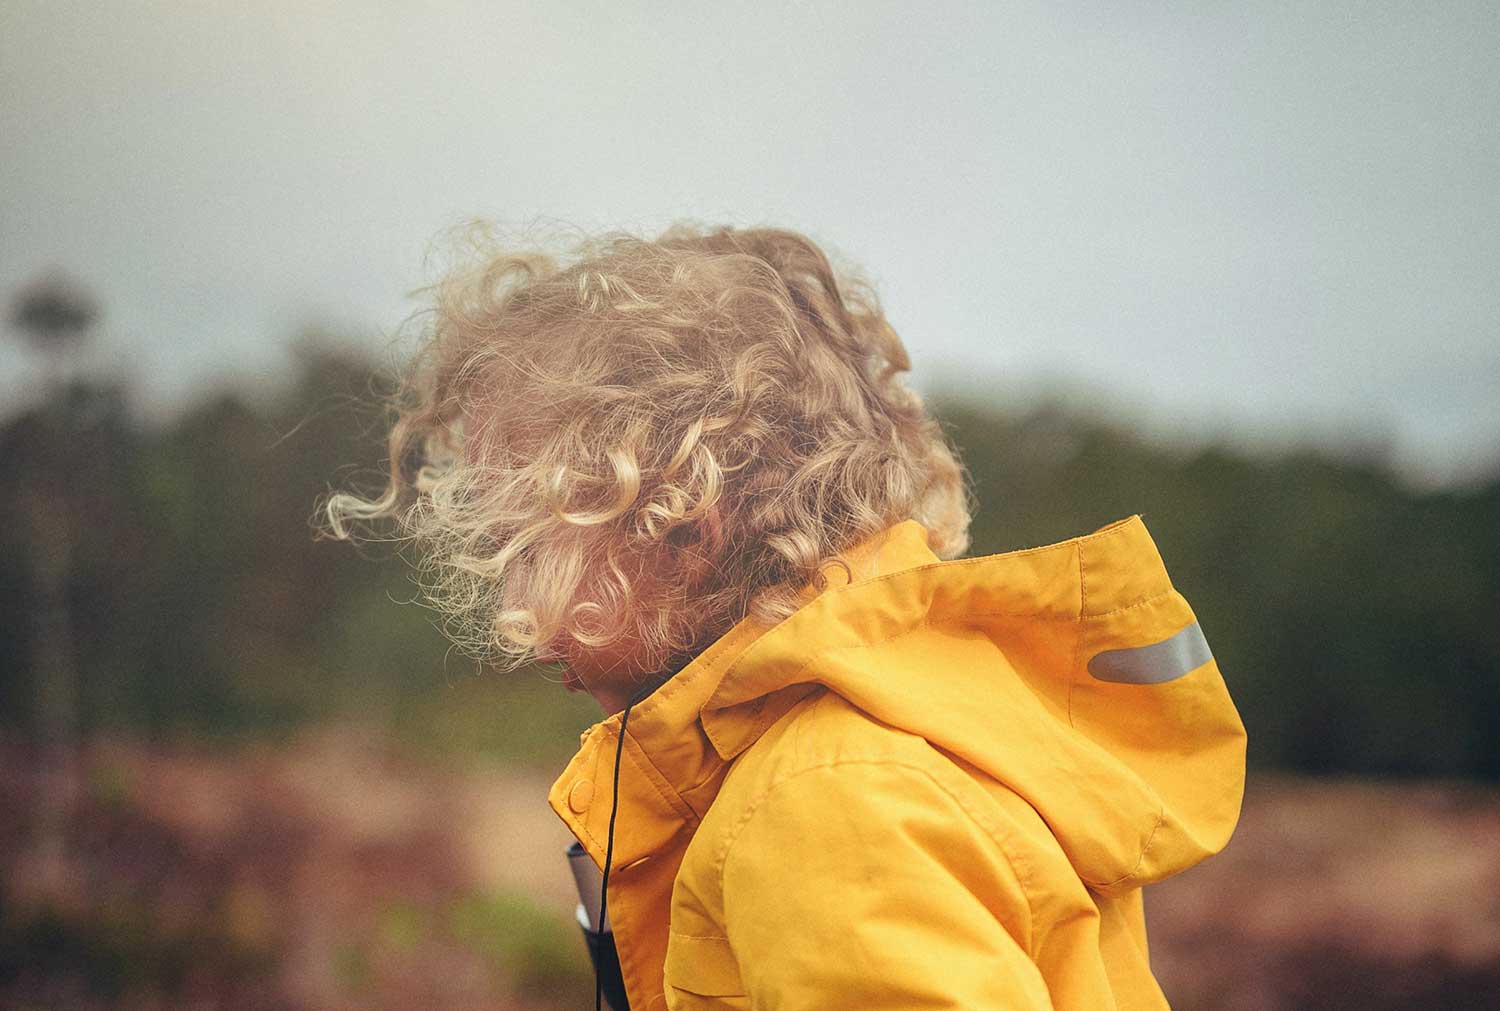 Glaubenssätze beeinflussen deine Welt ein Kind im gelben Regenmantel